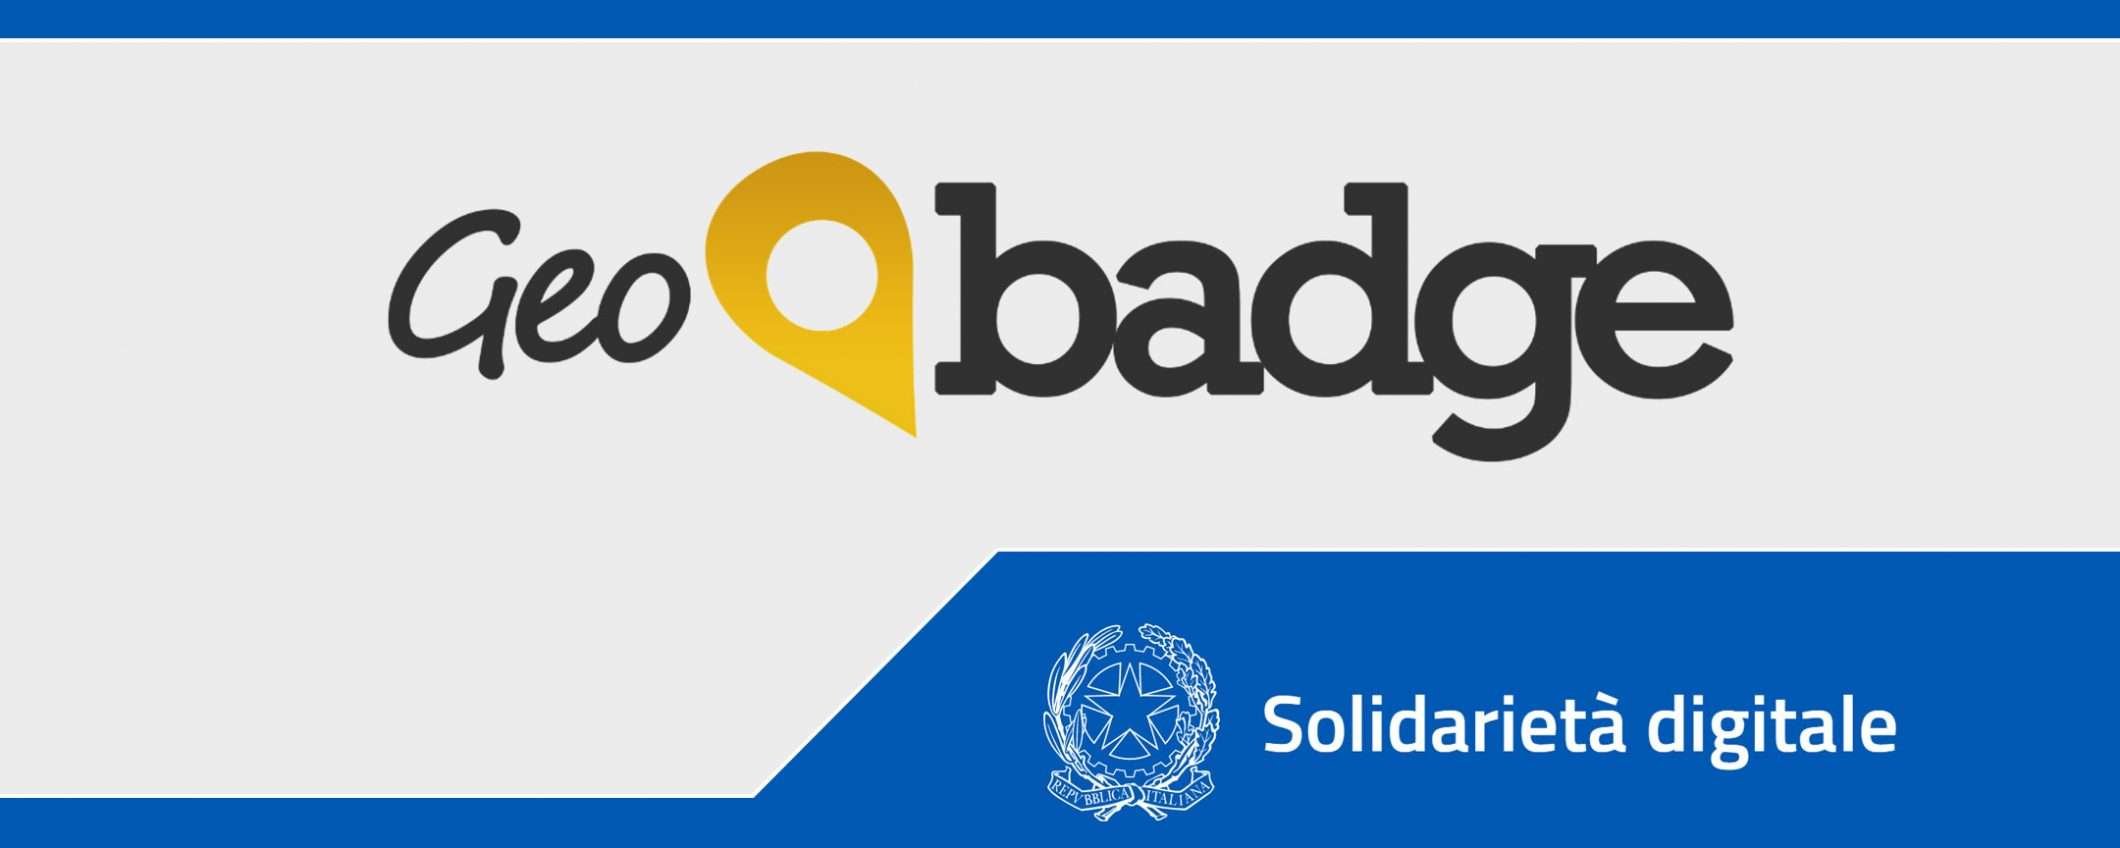 Solidarietà Digitale: smart working con GeoBadge